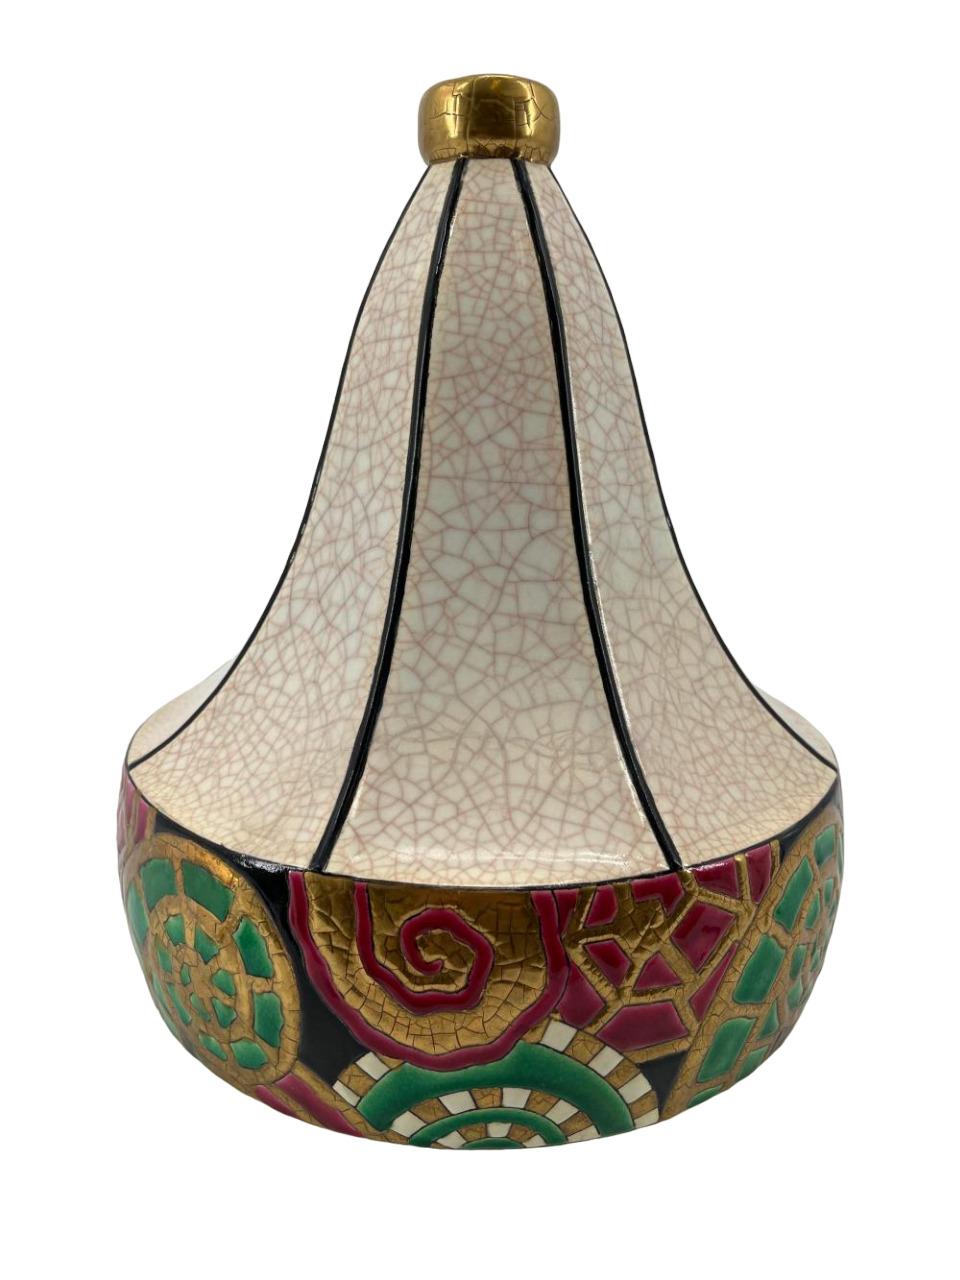 Eine große Art Déco-Keramikvase in Form eines polygonalen Kürbisses, verziert mit einer cremefarbenen Craquelé-Glasur und bunten Emaillen mit einer 